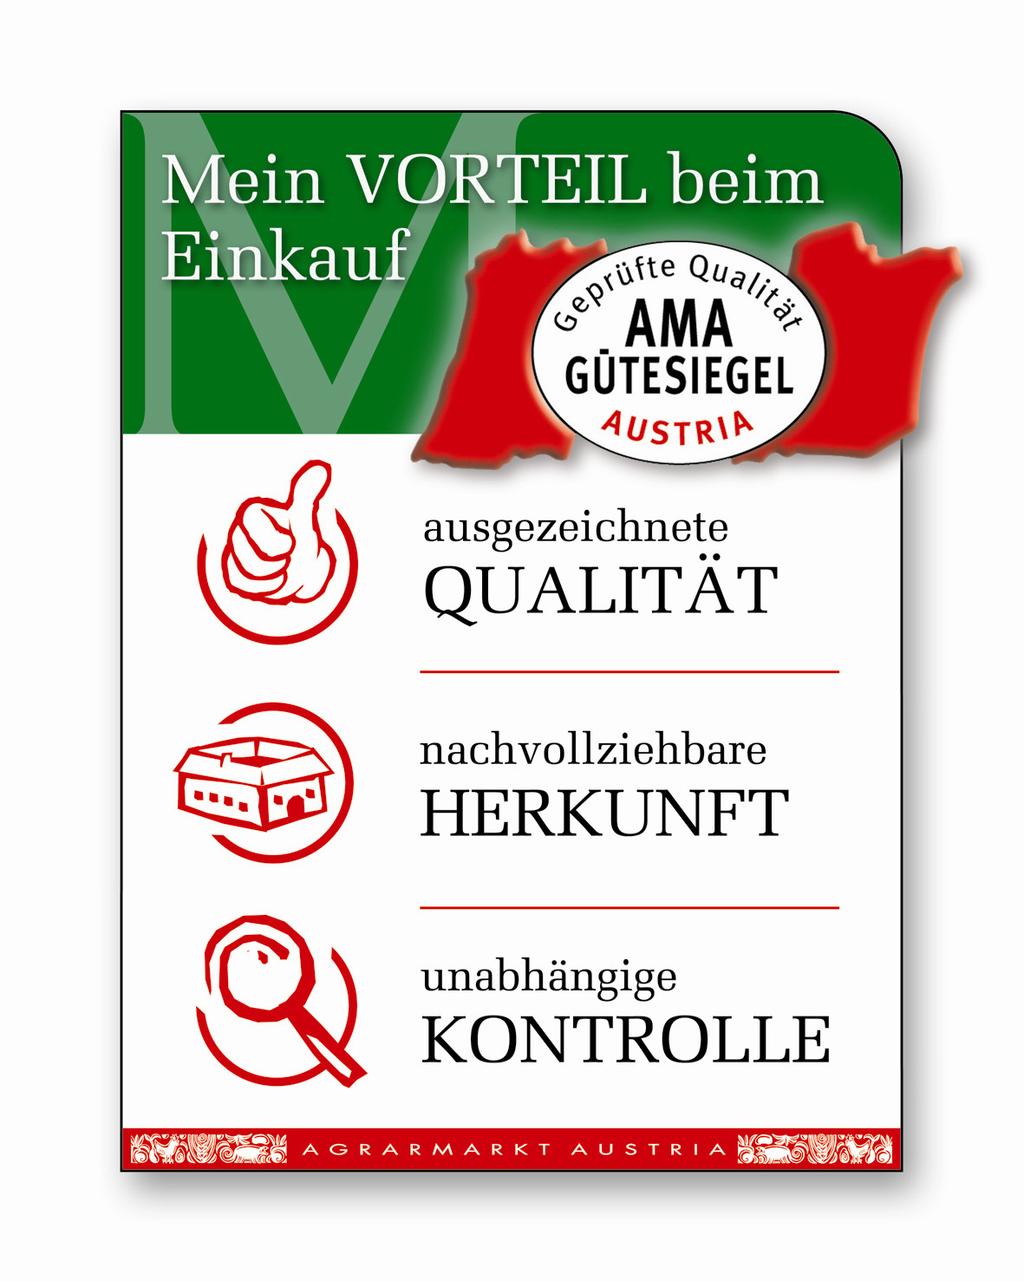 Medieninhaber und Hersteller: Agrarmarkt Austria Marketing GesmbH.